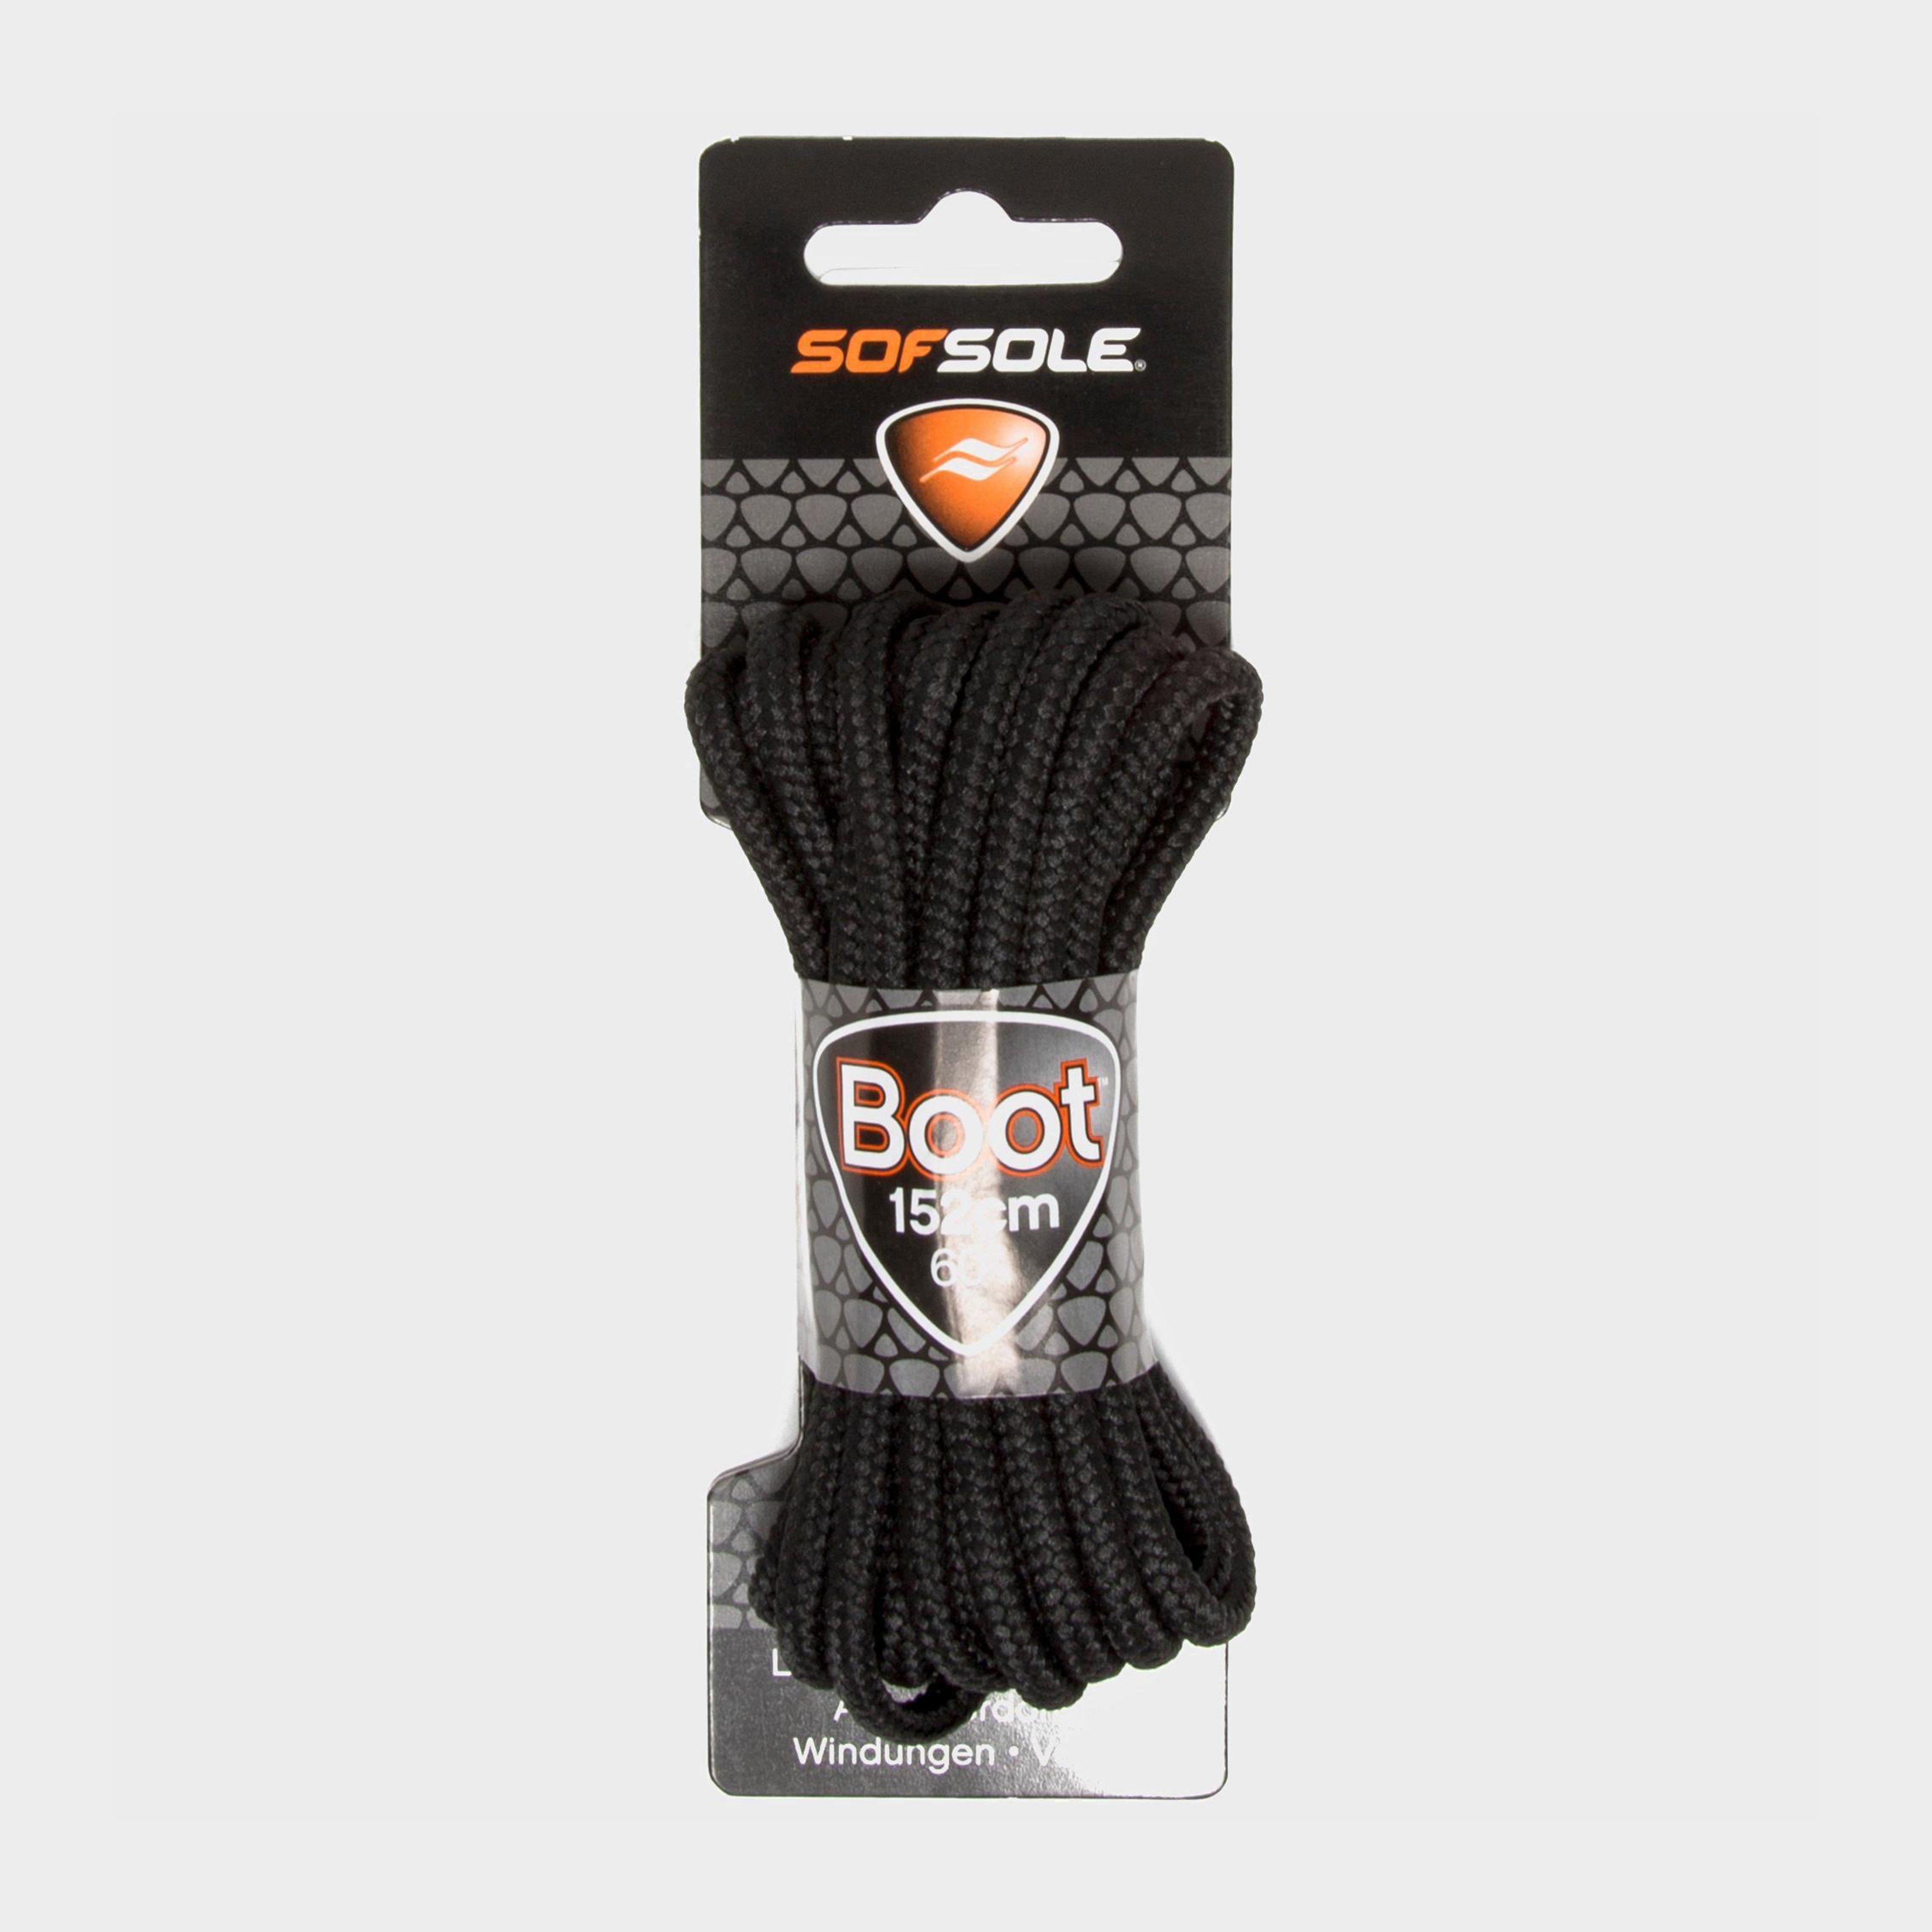 Sof Sole Wax Boot Laces - 152cm - Black/blk  Black/blk